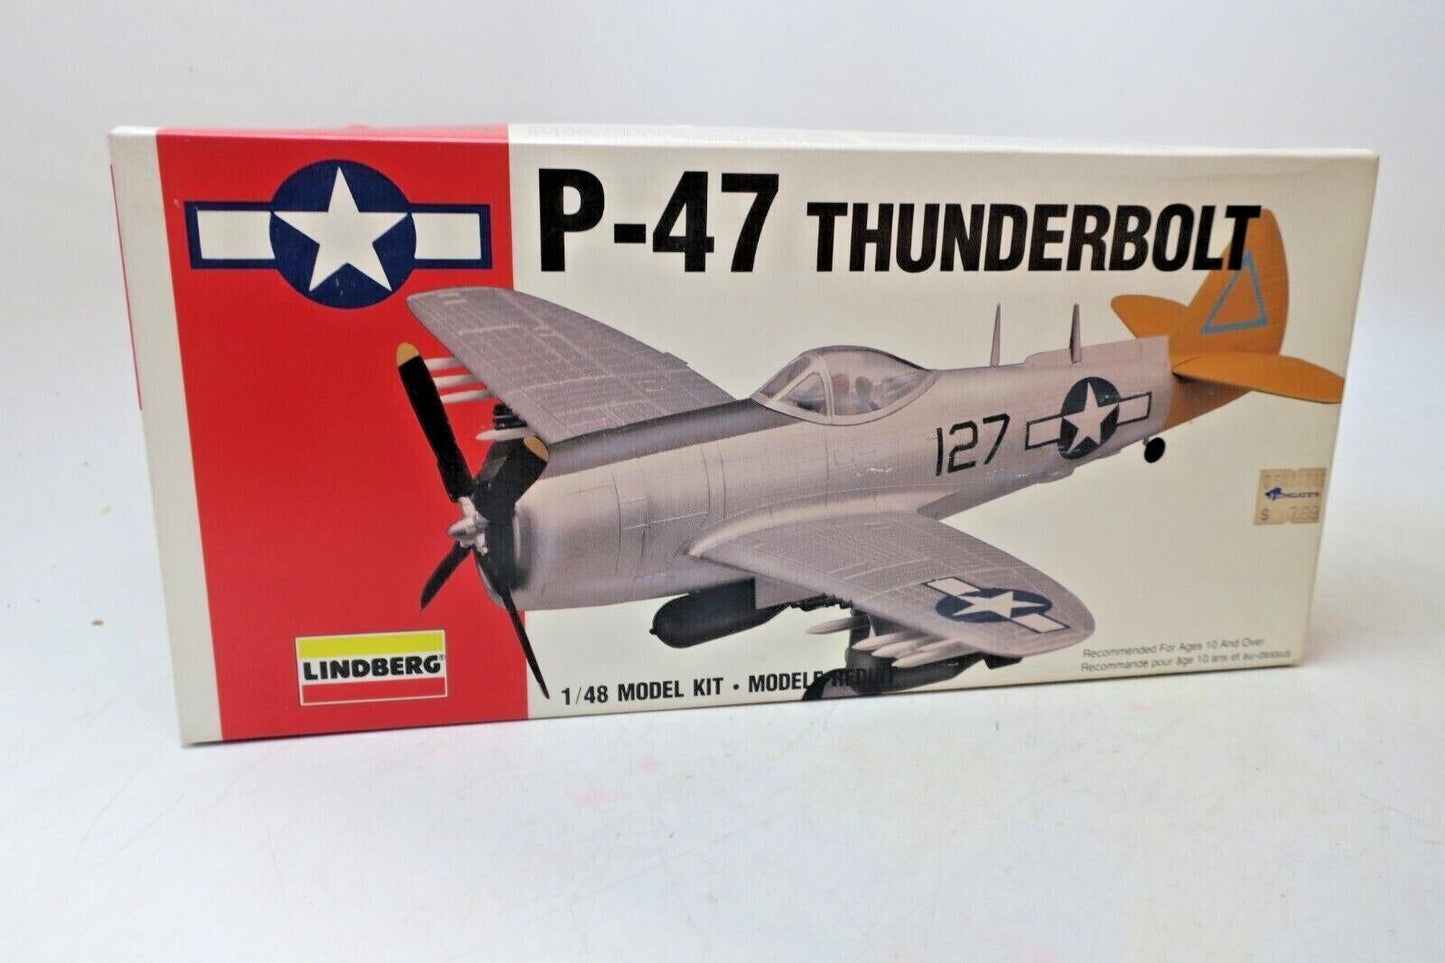 LINDBERG P-47 THUNDERBOLT 1/48 SCALE MODEL KIT 70502